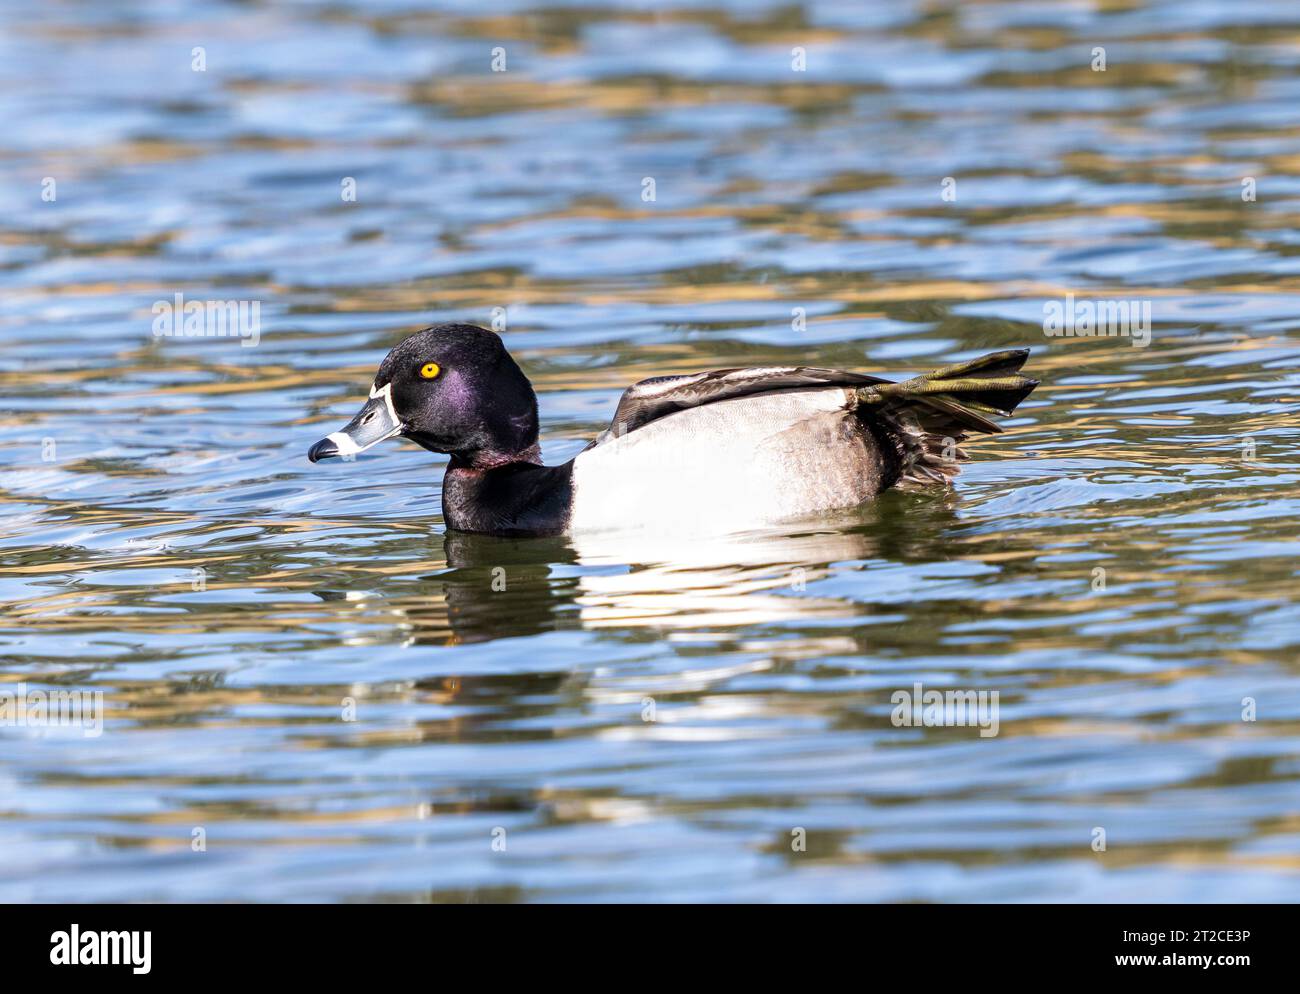 Eine Ente mit Ringhalsausschnitt und schöner Kopffarbe, die seinen gesponnenen Fuß zeigt, während er sich beim Schwimmen in einem See ausdehnt. Stockfoto